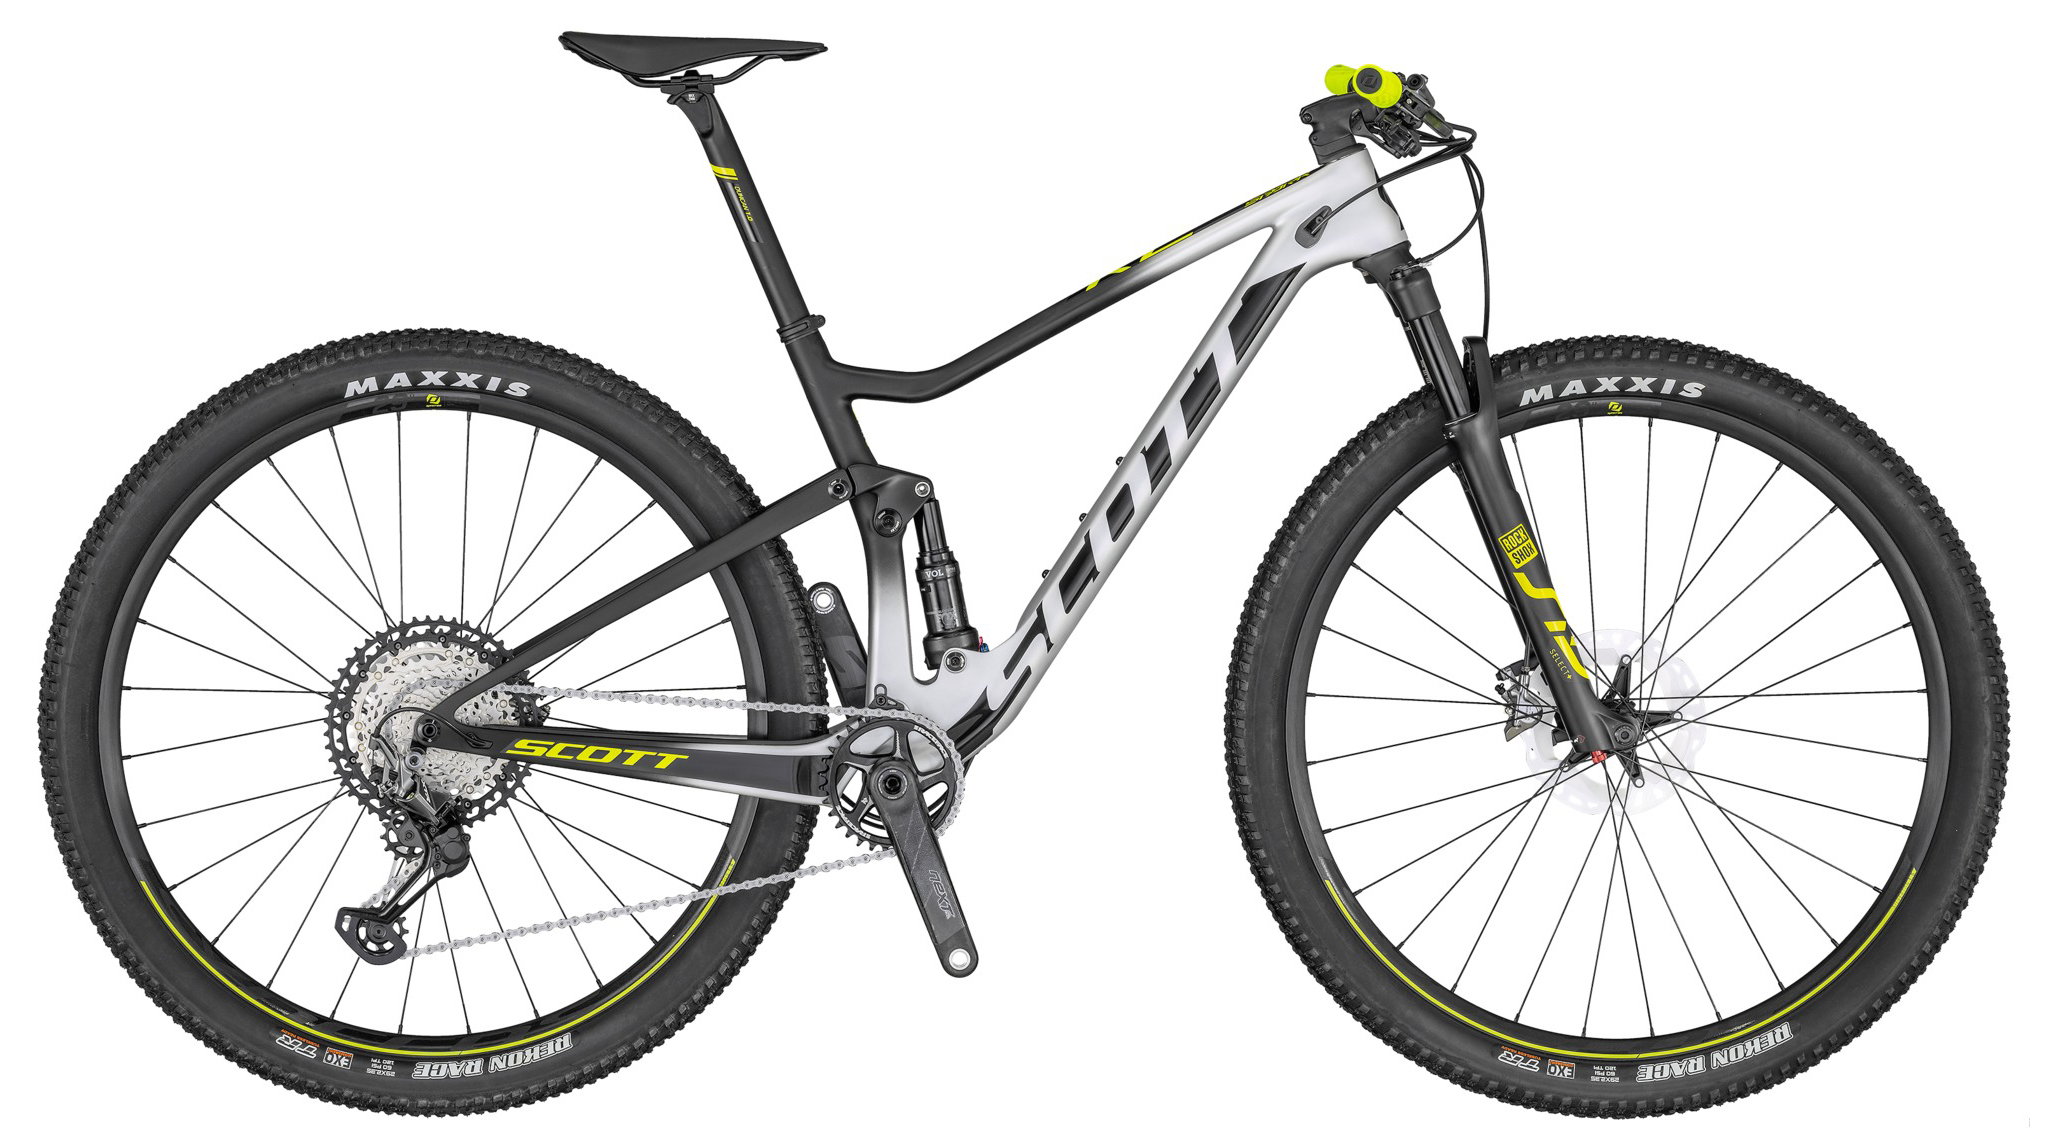  Отзывы о Двухподвесном велосипеде Scott Spark RC 900 Pro 2020